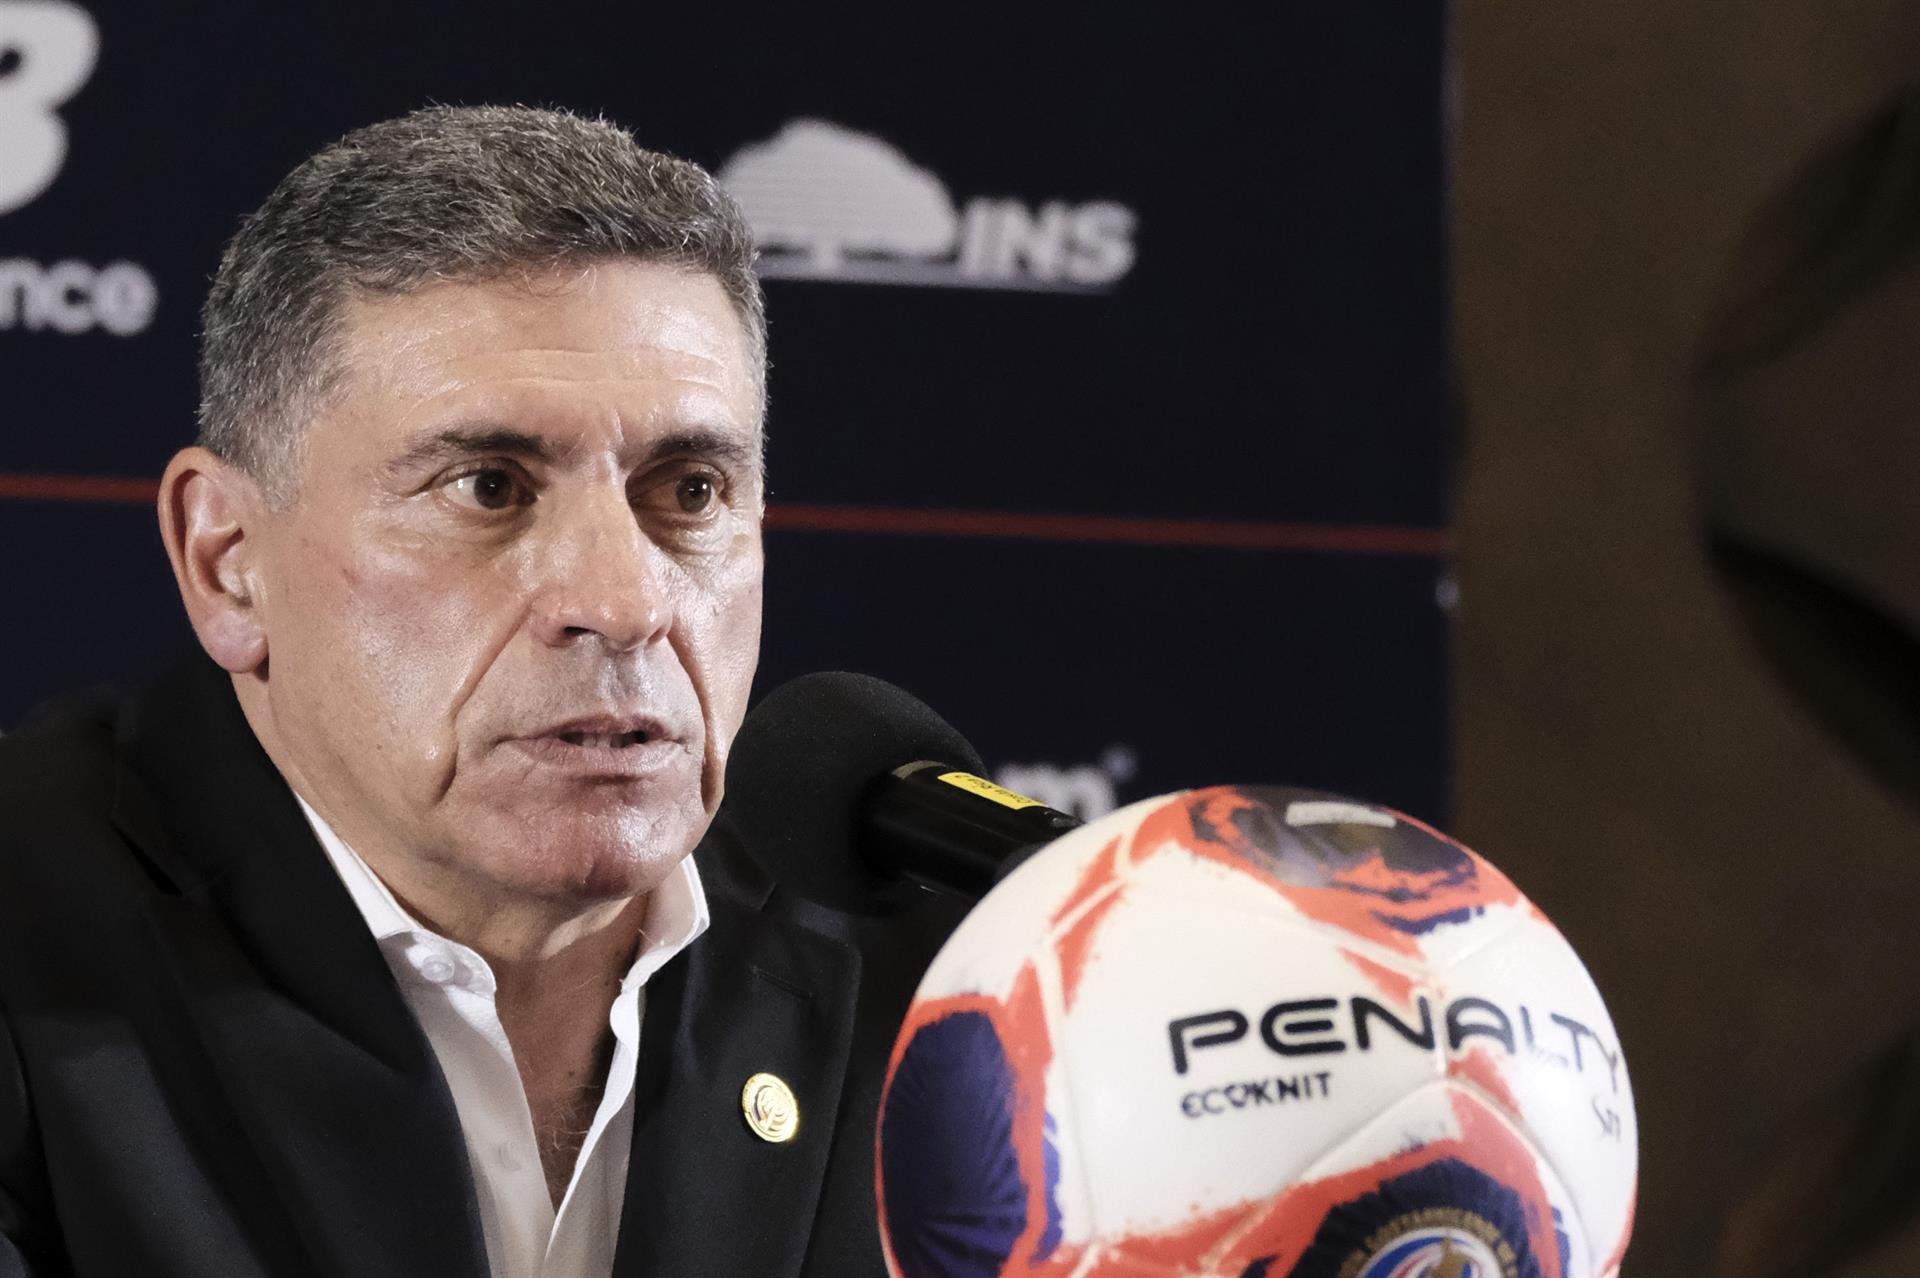 El colombiano Suárez renueva hasta 2026 como seleccionador de Costa Rica